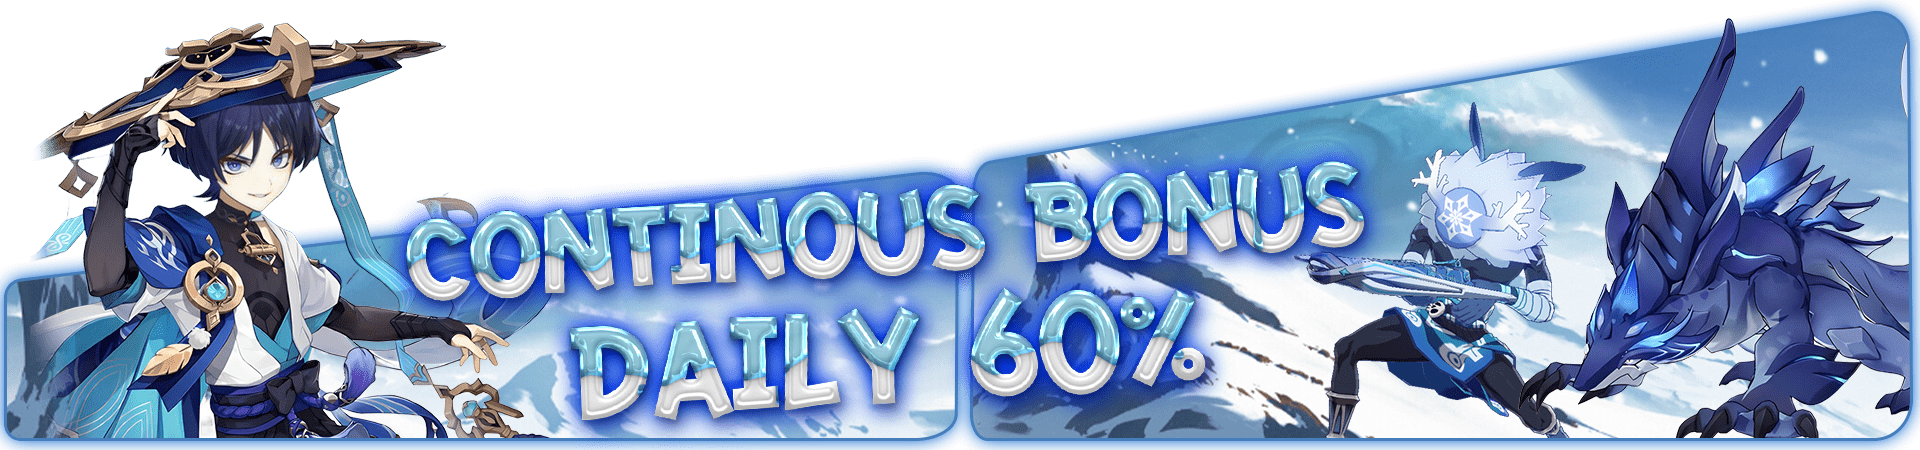 betmnl-CONTINOUS BONUS DAILY 60%